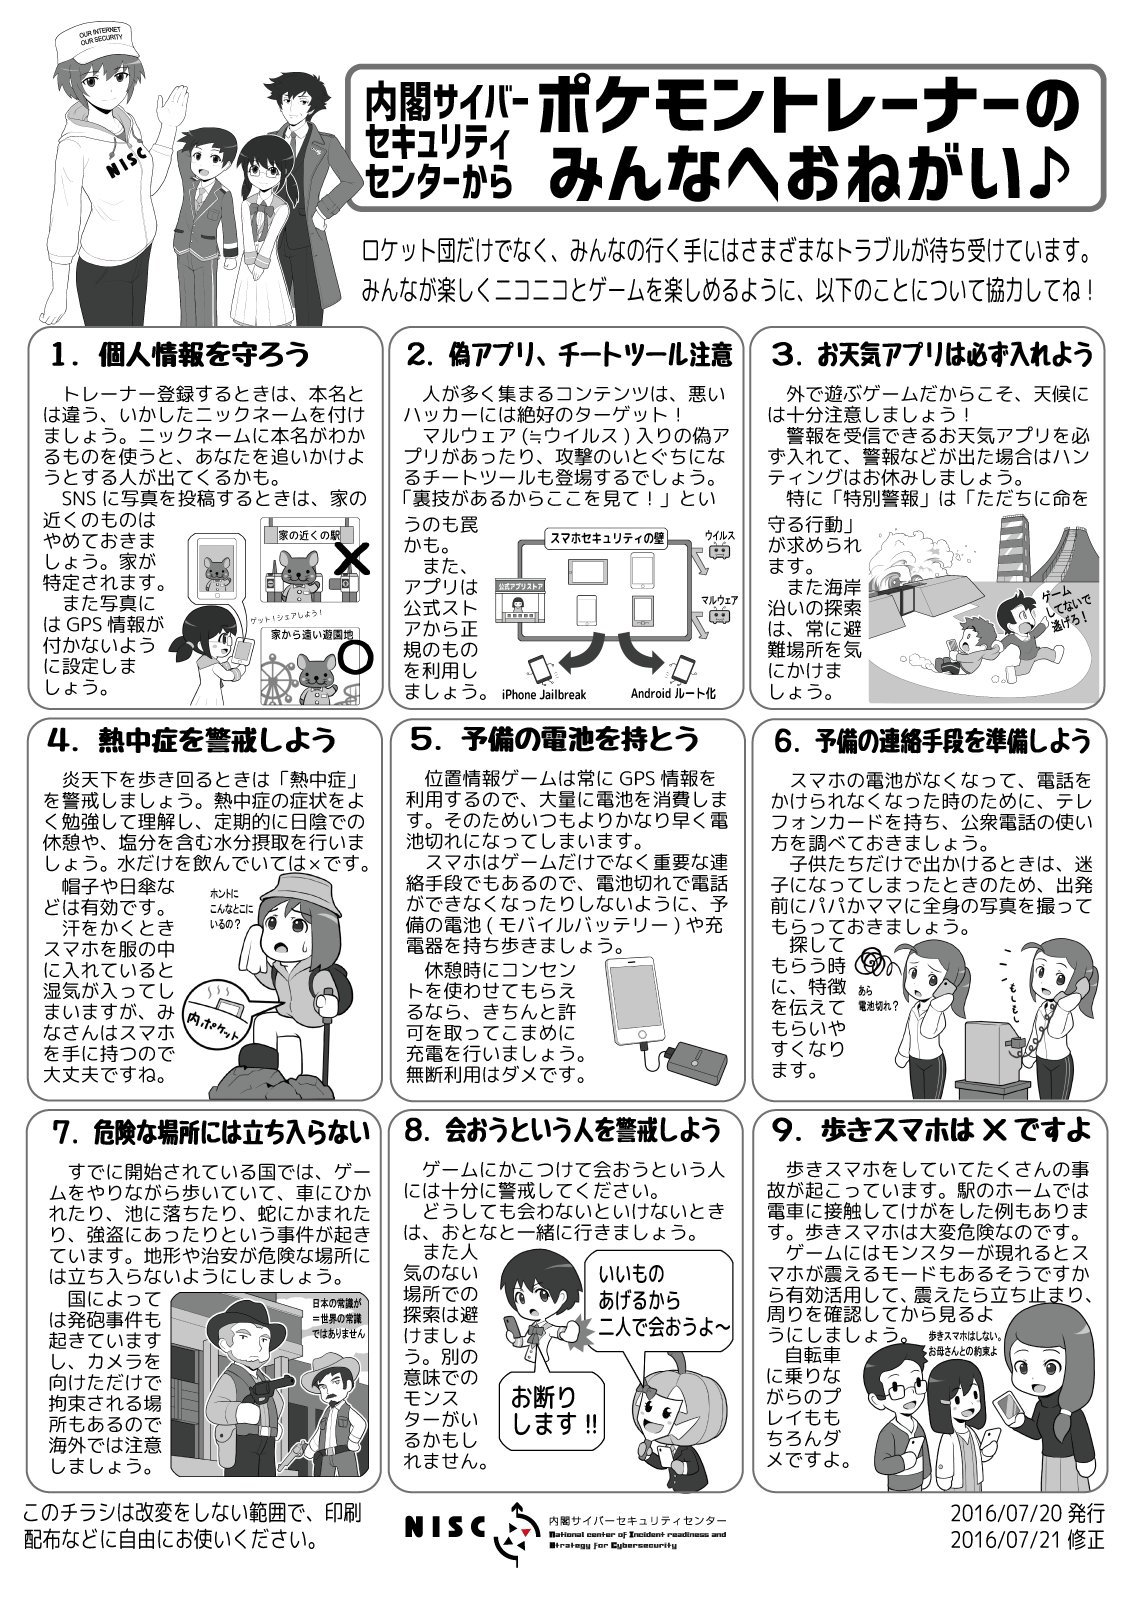 「ポケモンGO」の日本配信スタート日時を大予測！「7/23の朝」が最有力？